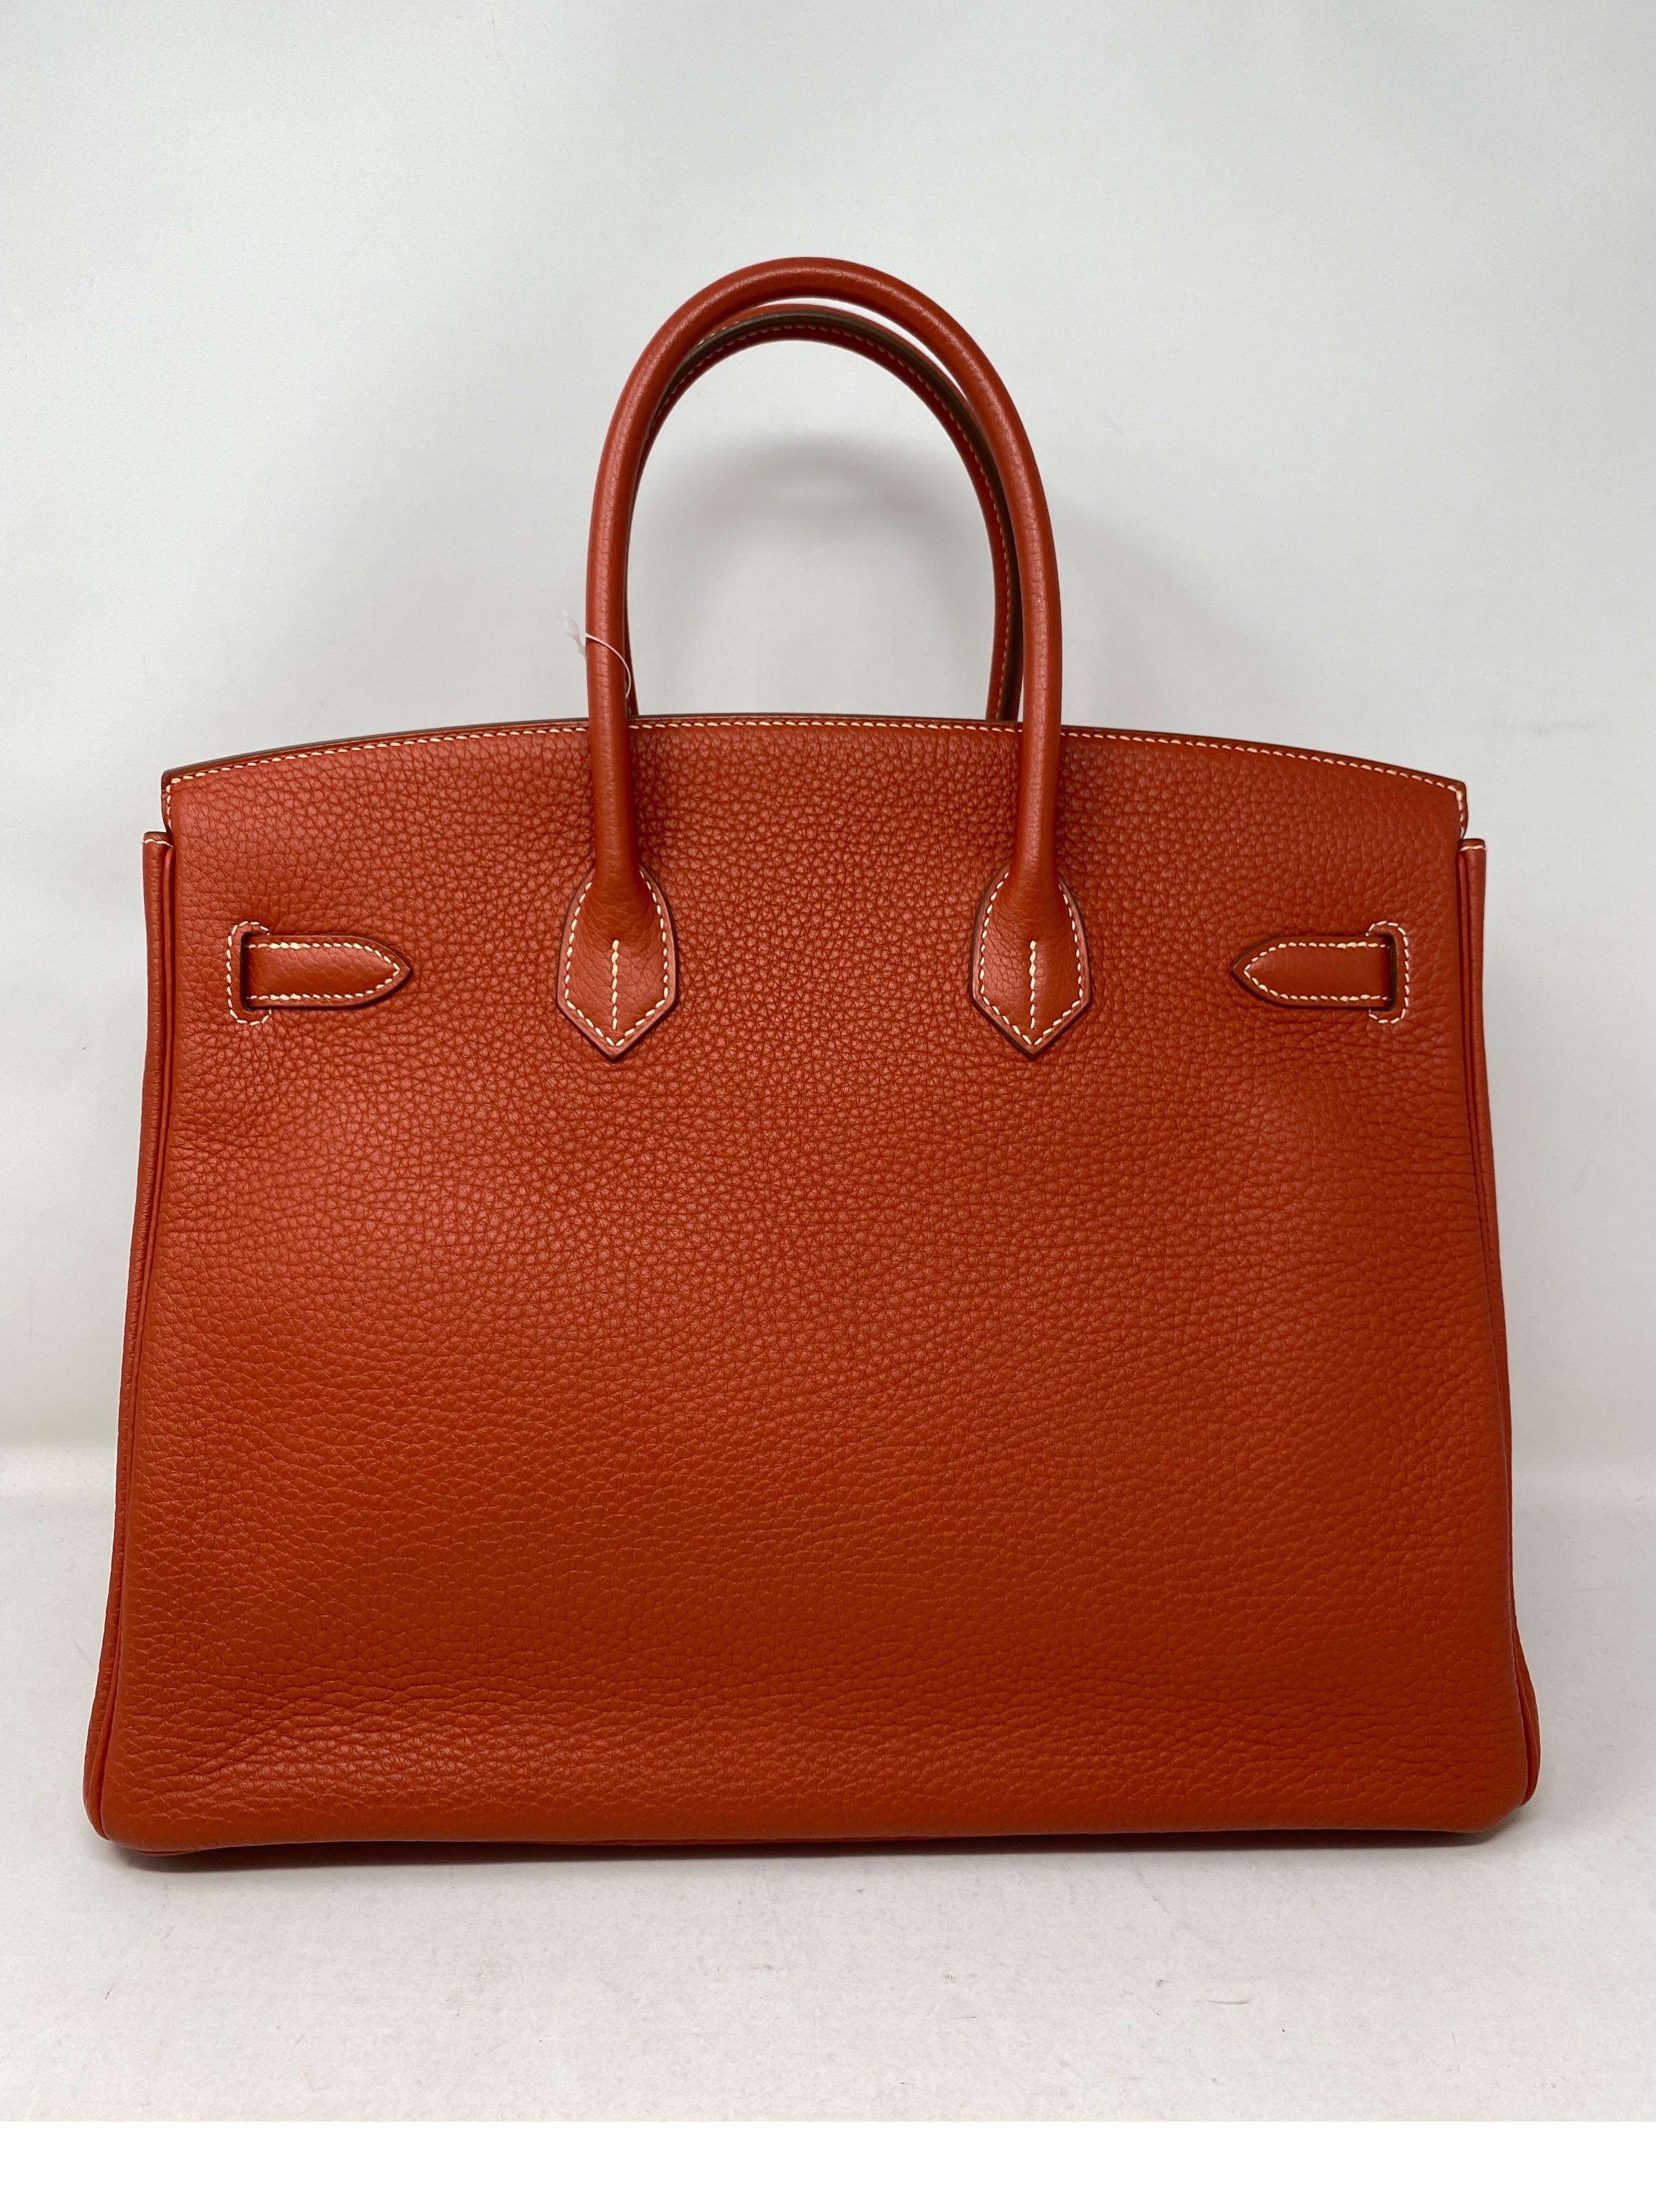 Red Hermes Birkin 35 Sanguine Bag